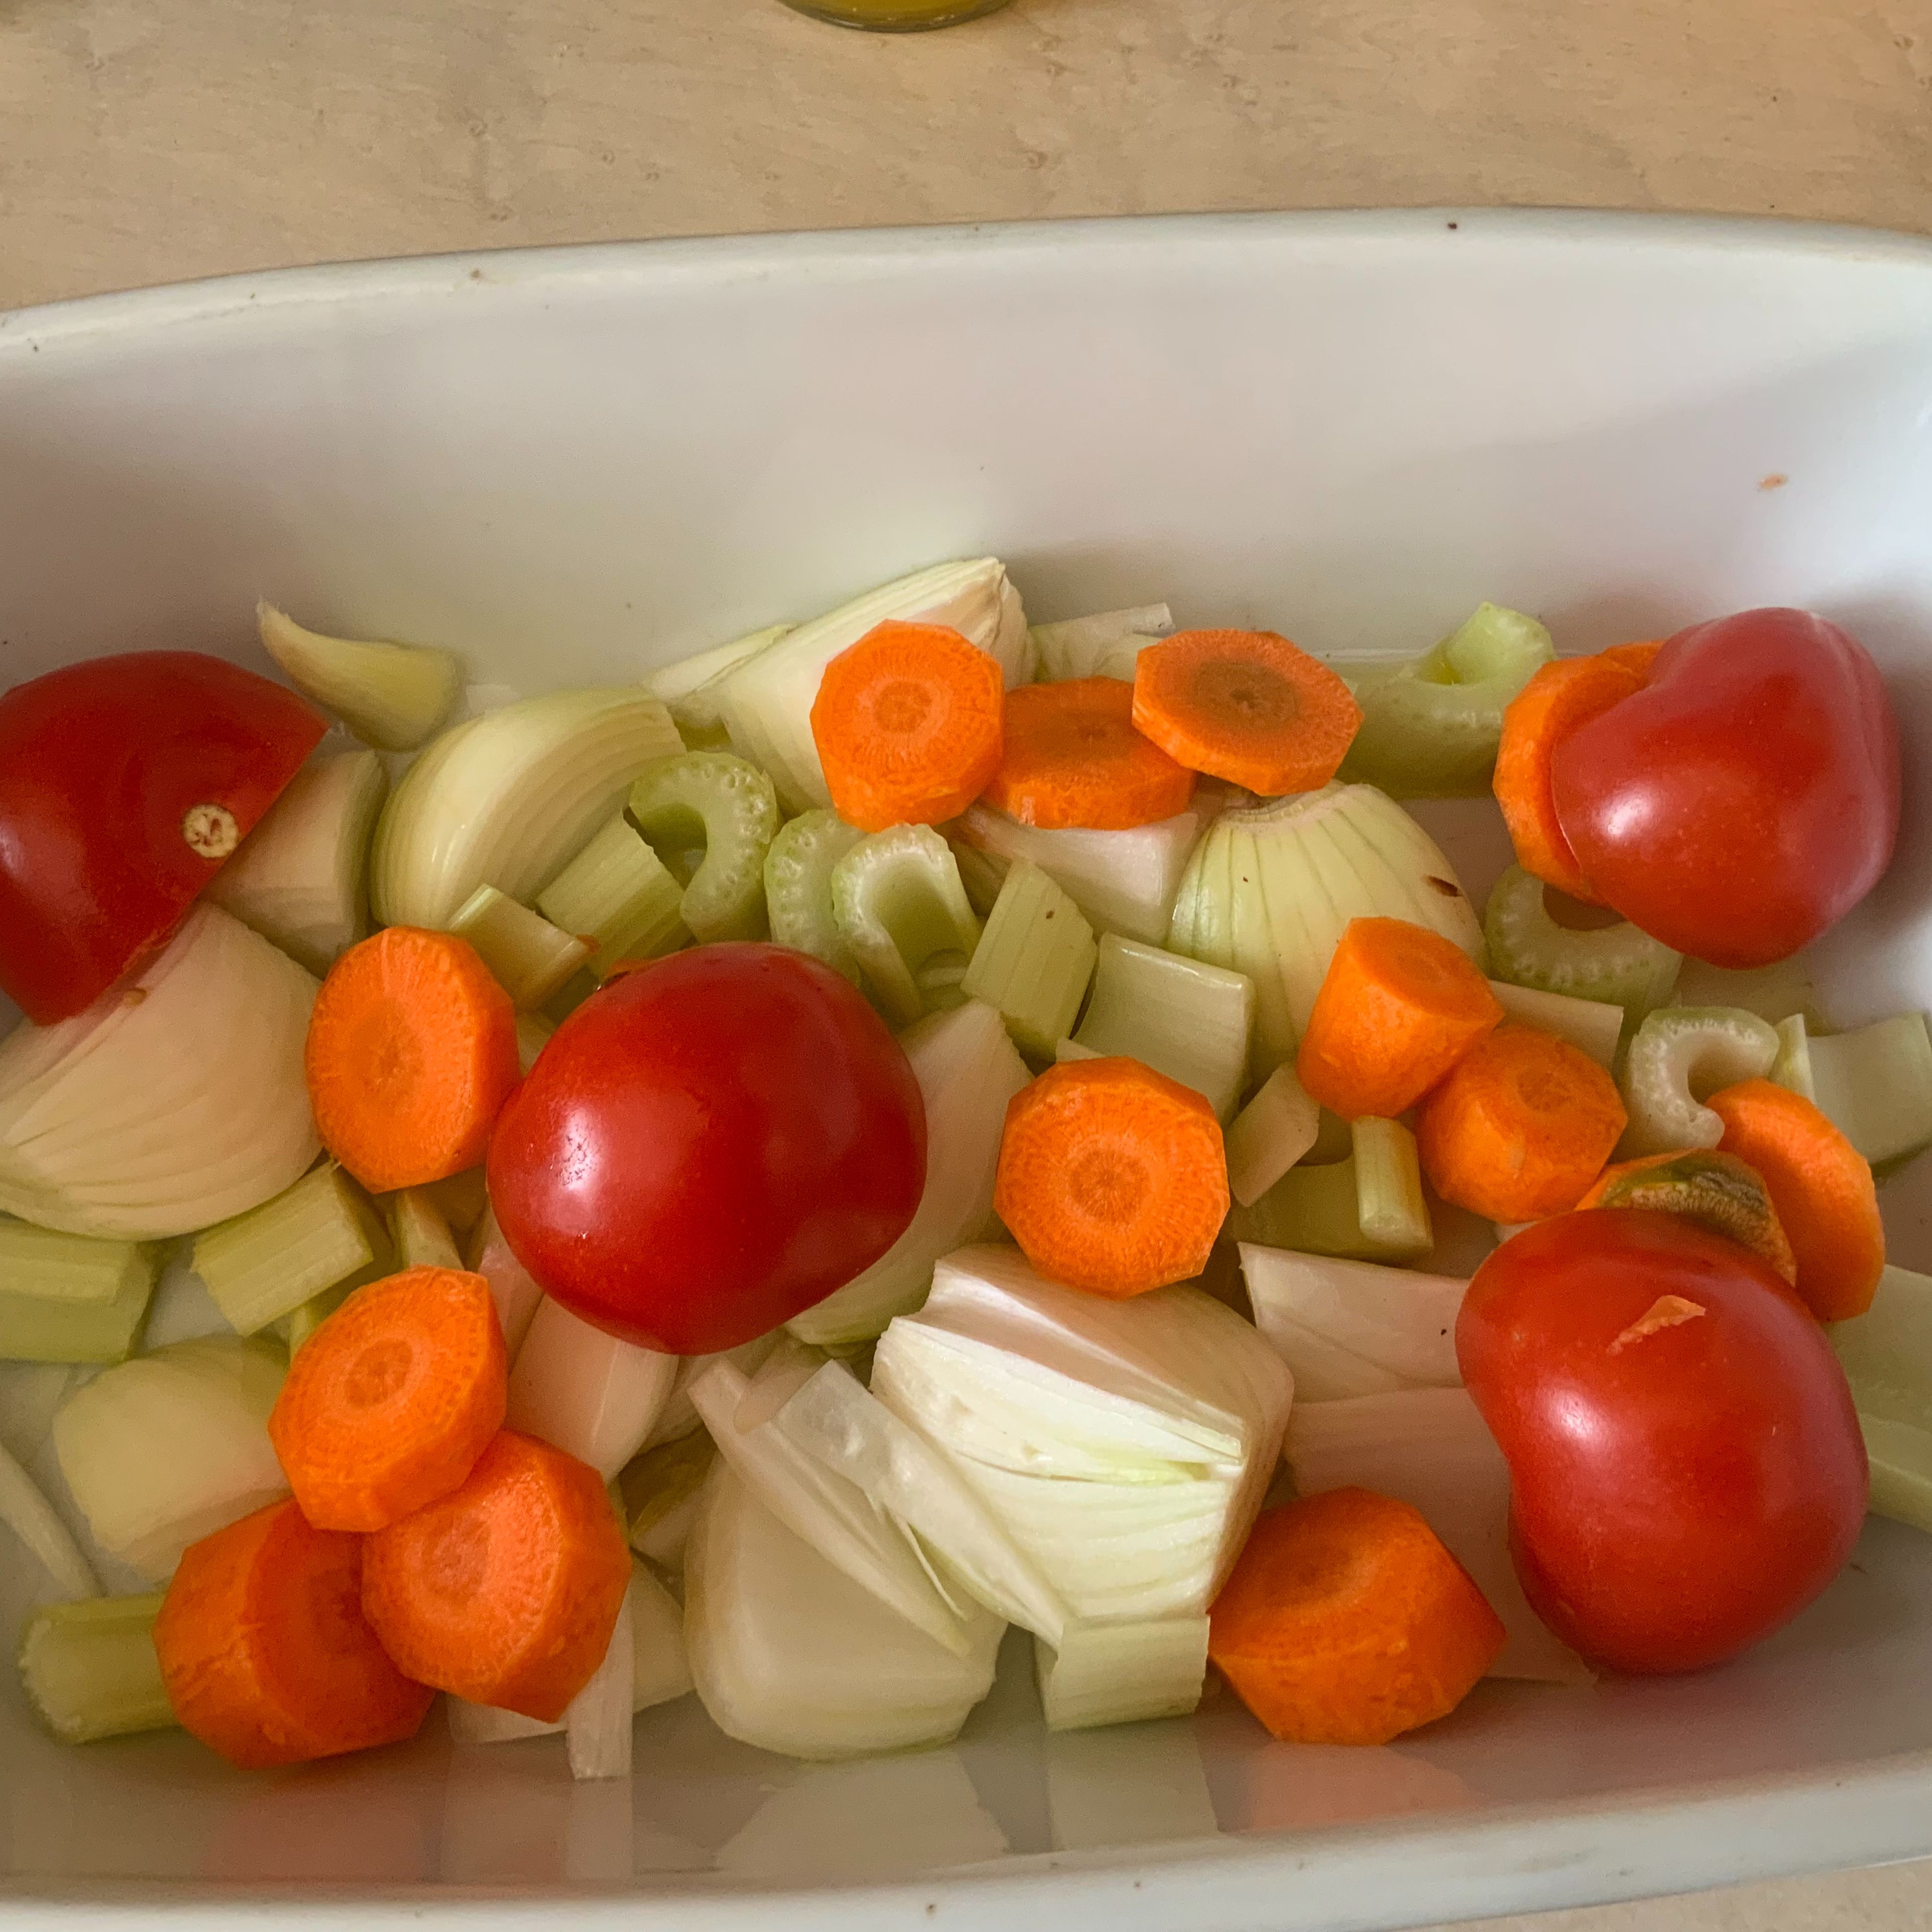 In den Bräter wenig Rapsöl hinzufügen und mit 2 Zwiebeln, dem Staudensellerie, der Karotte und den halbierten Tomaten ein Bett zubereiten. Die Keule drauf legen und bei 200°C Umluft 45 Minuten in das Backrohr geben.